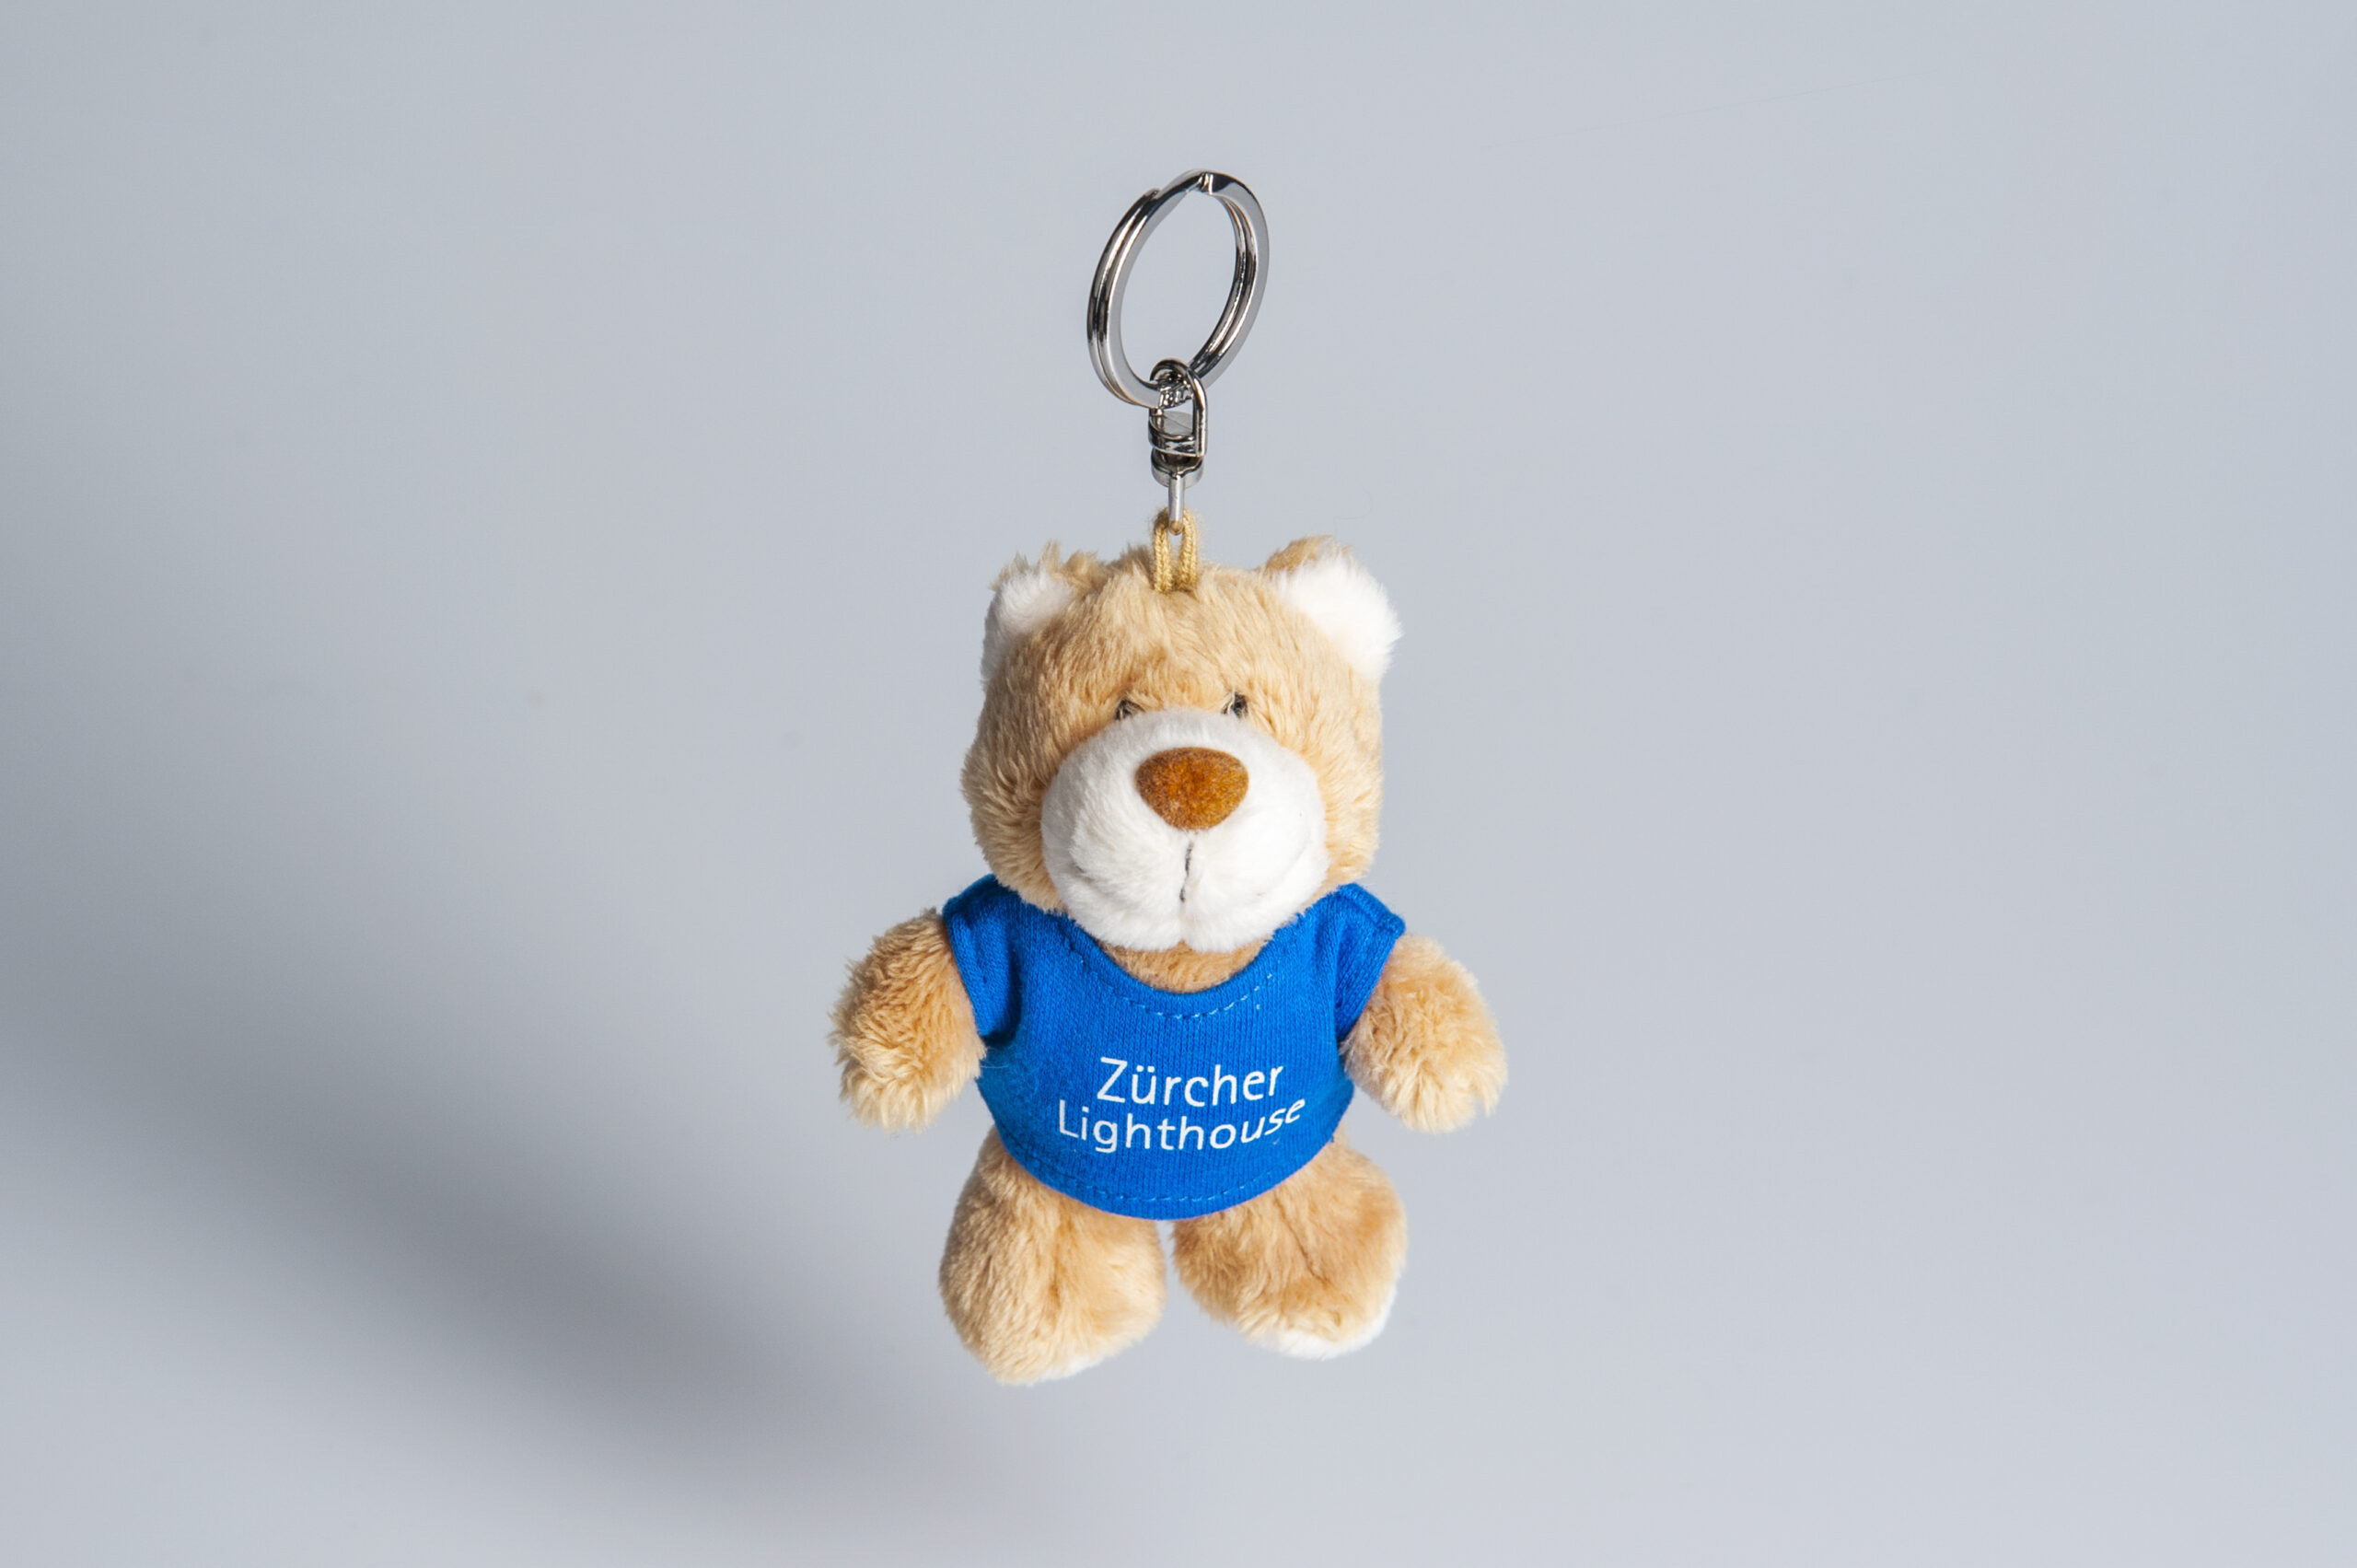 Teddybär Loli ist eine bärenstarke Unterstützung für die Palliative Pflege des Zürcher Lighthouse, Danke für jede Bestellung im Onlineshop